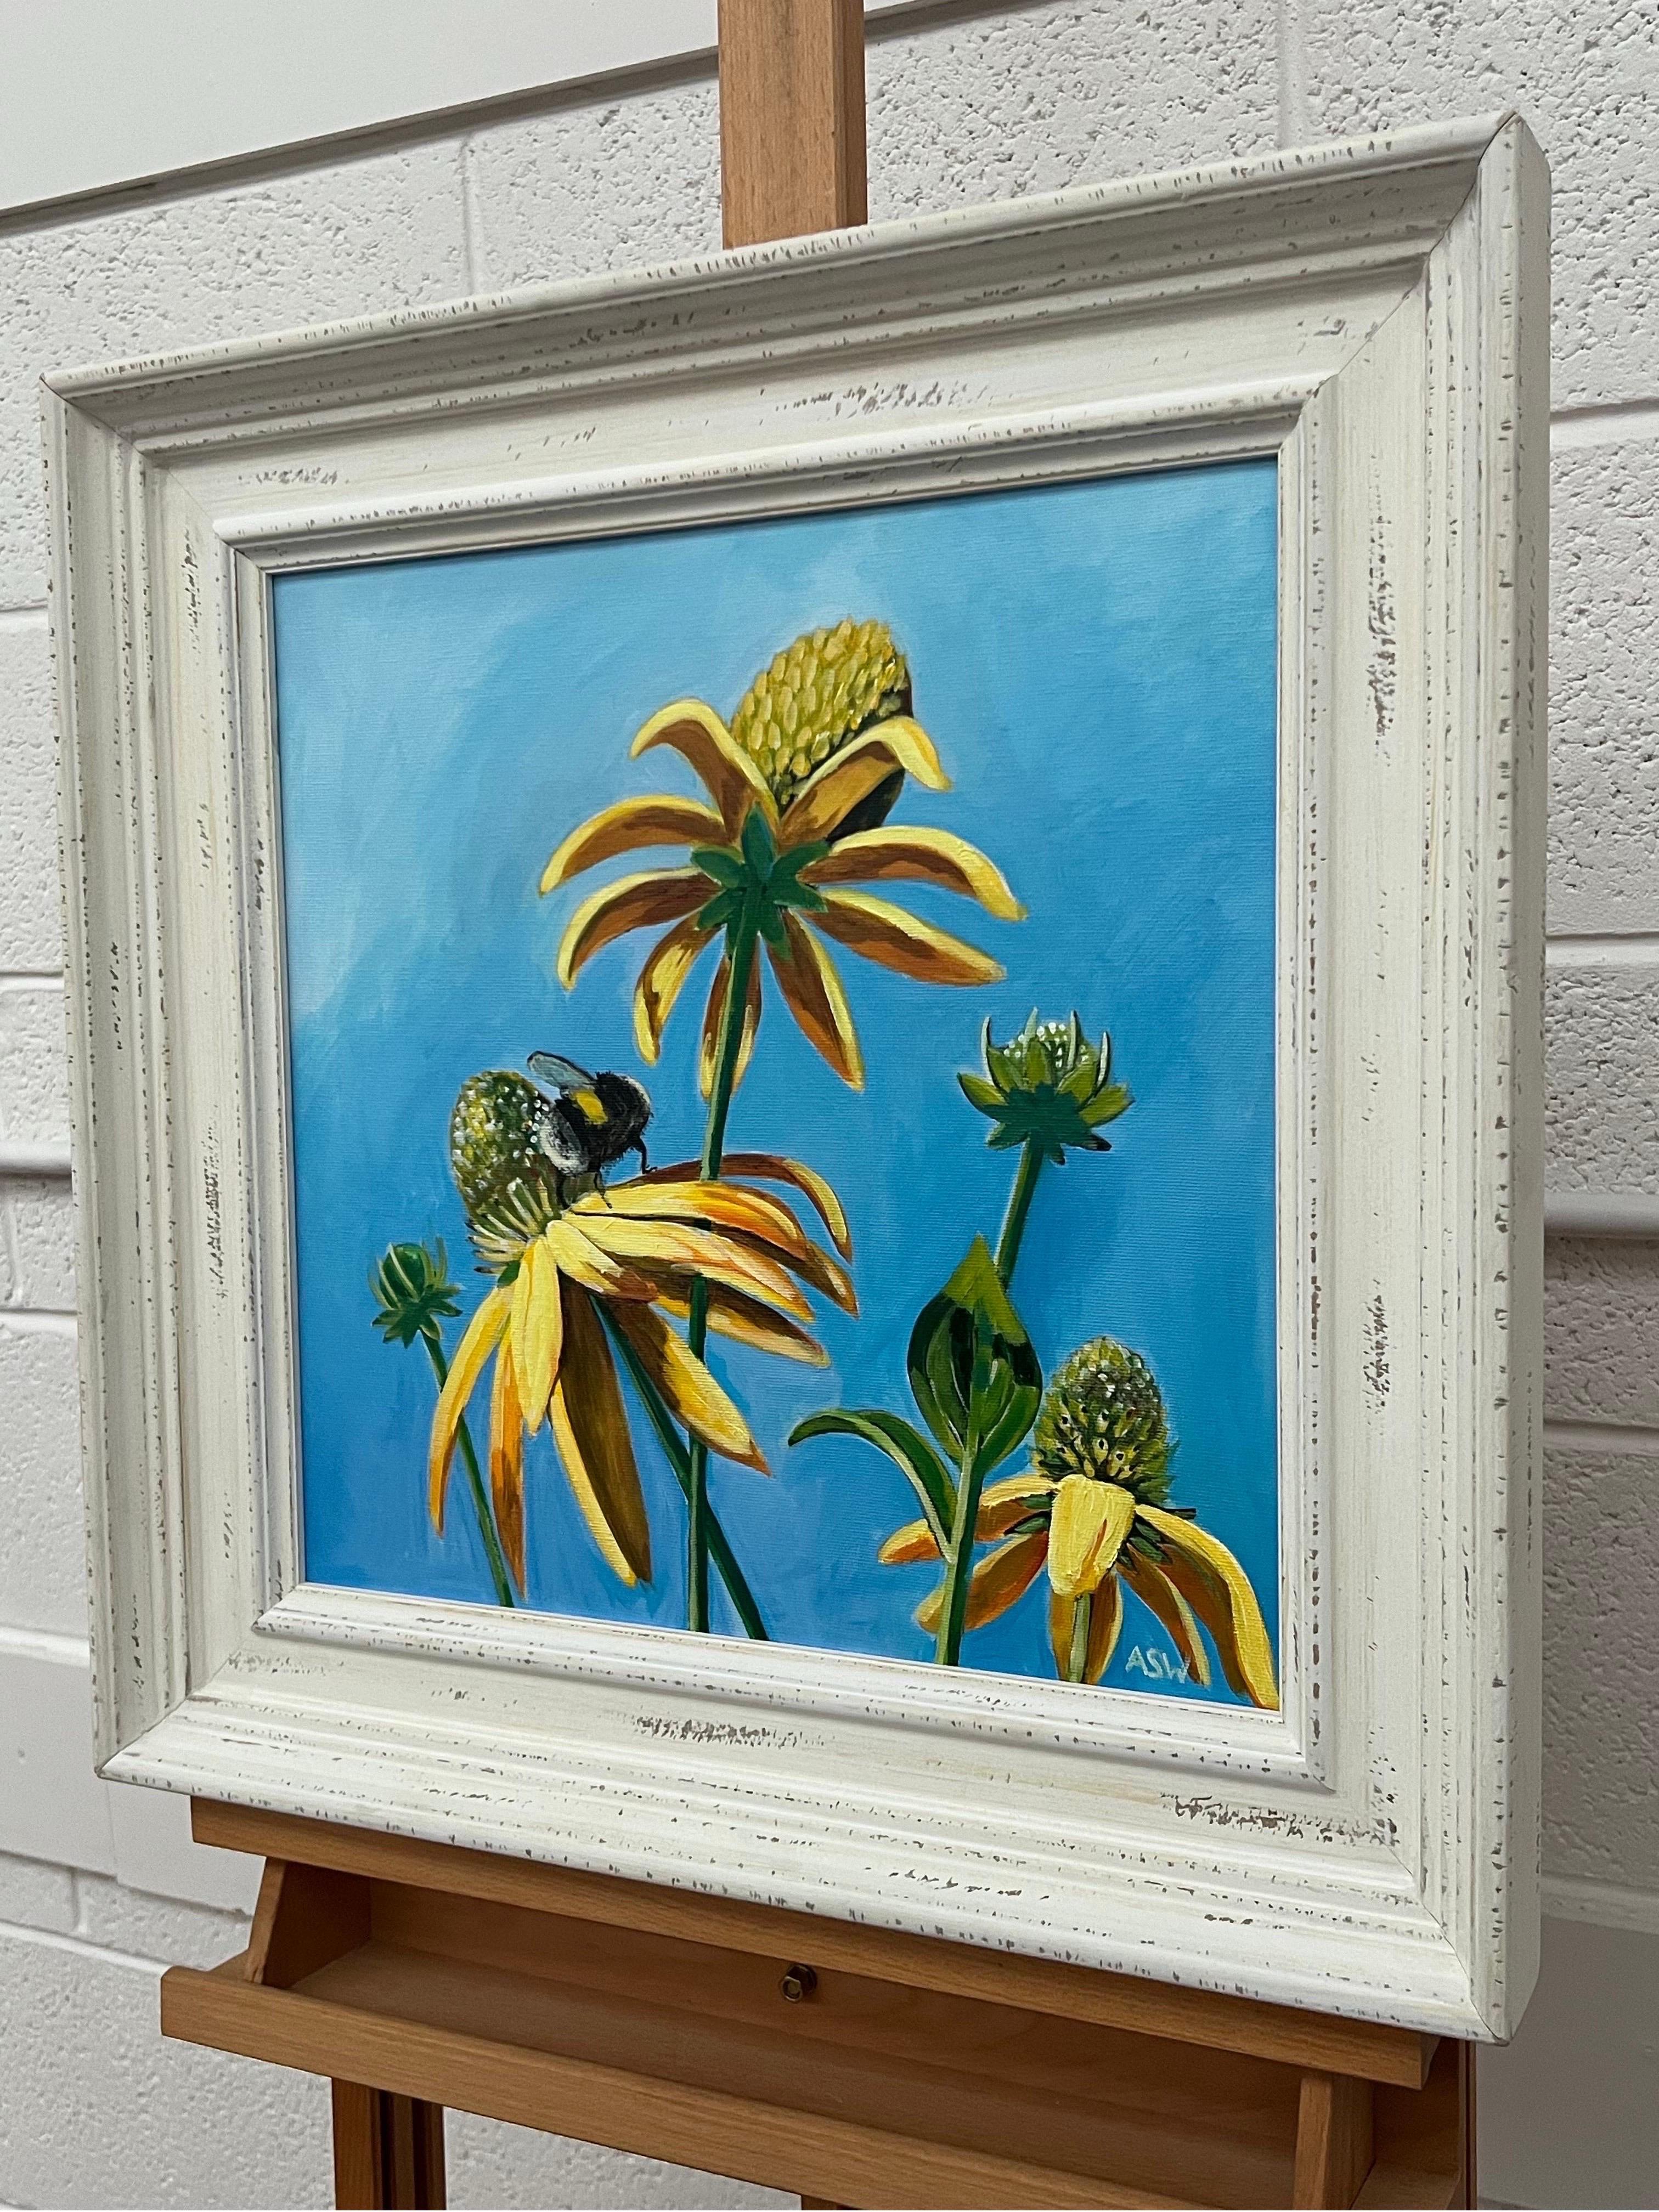 Englische Gartenlandschaft mit Bienen auf Blumen von der zeitgenössischen britischen Künstlerin Angela Wakefield. Dieses Original verwendet eine begrenzte Farbpalette von Himmelblau und Gelb. 

Kunst misst 16 x 16 Zoll
Rahmen misst 22 x 22